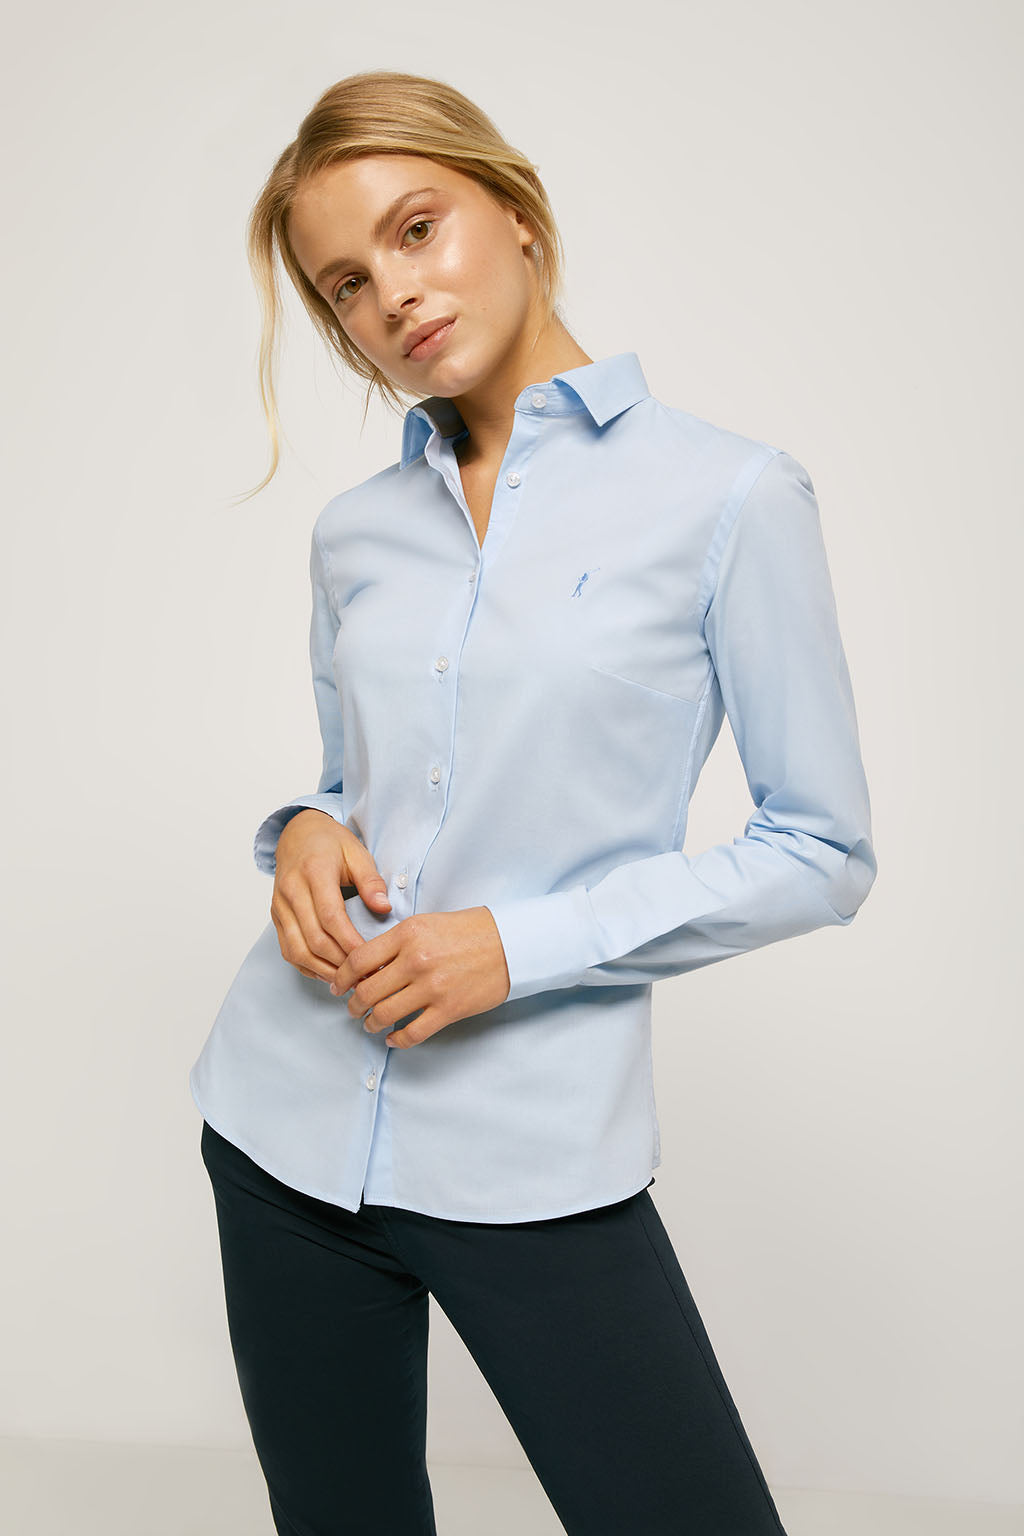 Camisa entallada azul cielo de con logo bordado – Polo Club